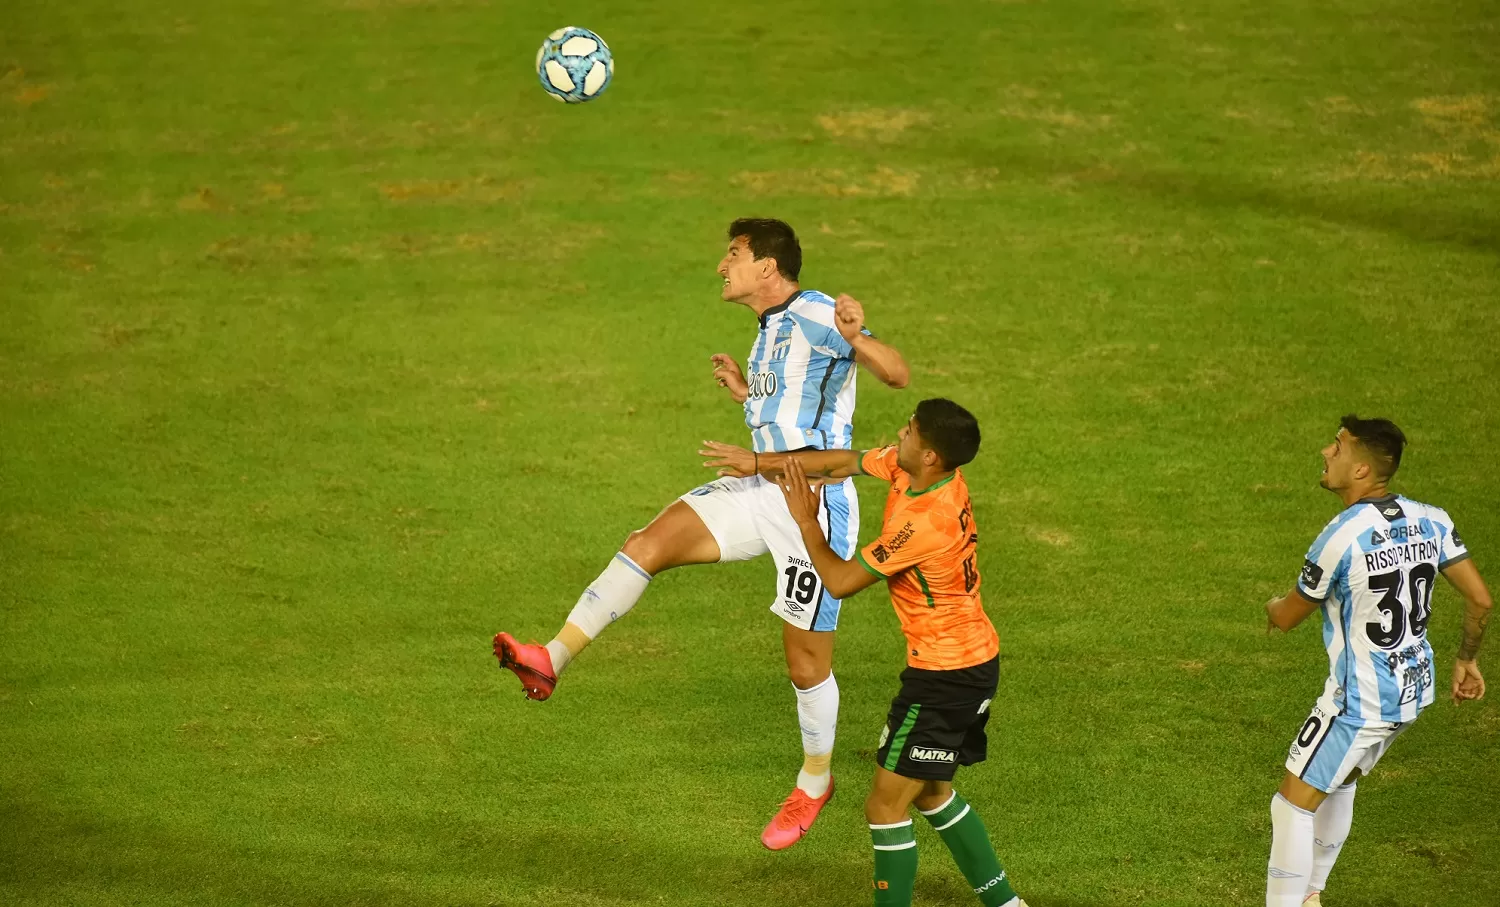 SIN FÚTBOL. Aguirre jugó un mal partido y Atlético lo sintió. LA GACETA/FOTO DE DIEGO ARÁOZ 